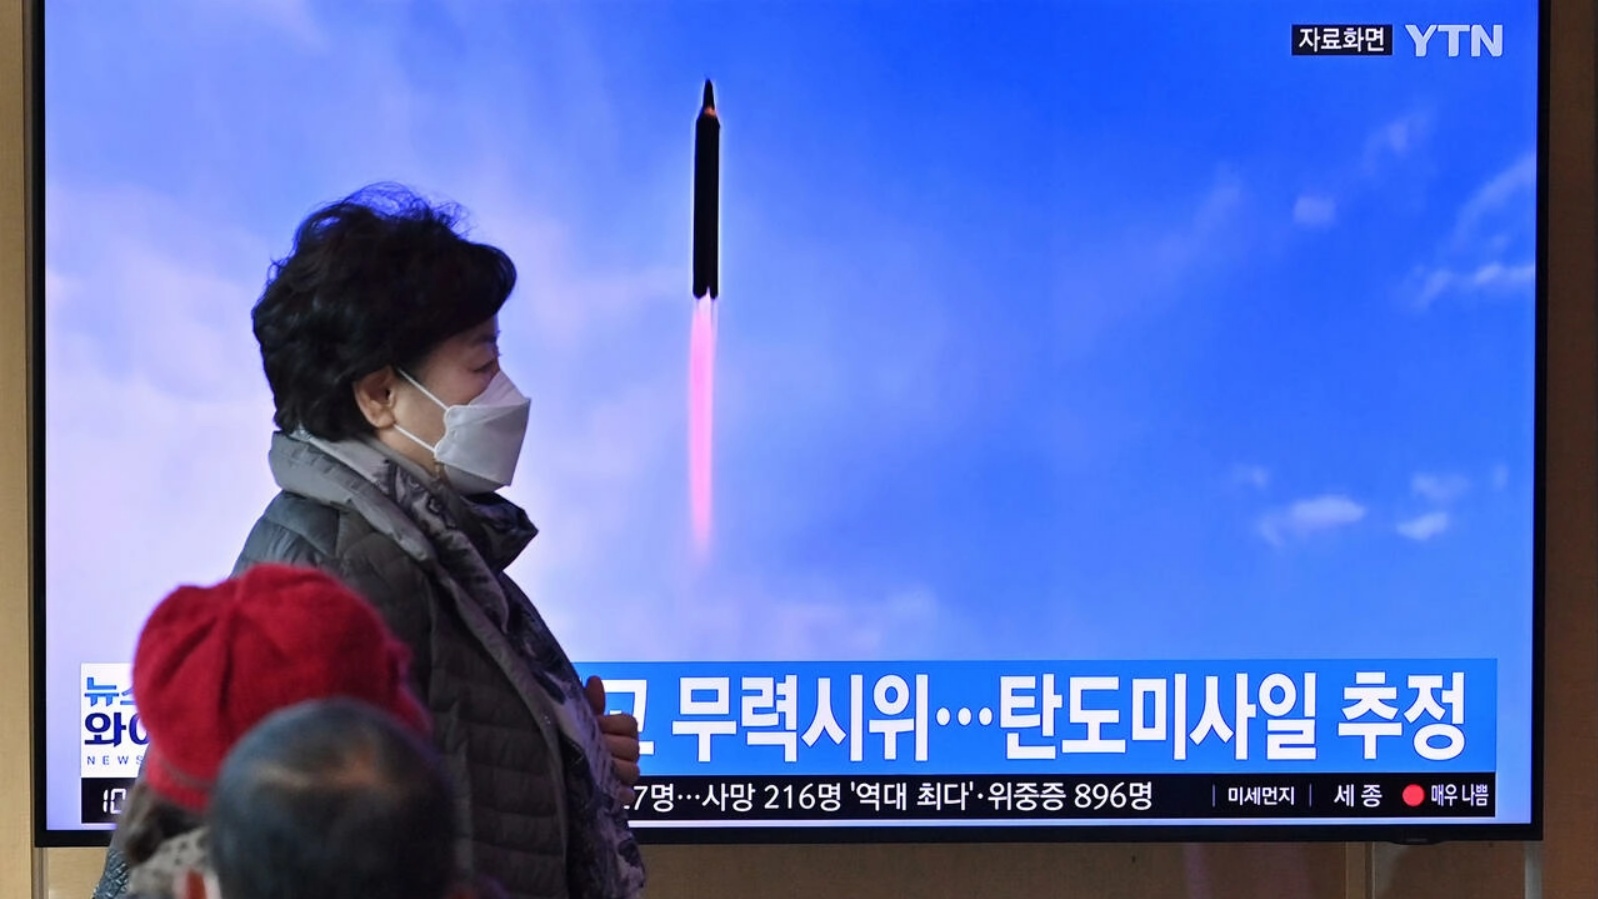 شاشة تلفاز تظهر لقطة من الارشيف لاختبار صاروخي كوري شمالي في سيول بتاريخ 5 مارس 2022